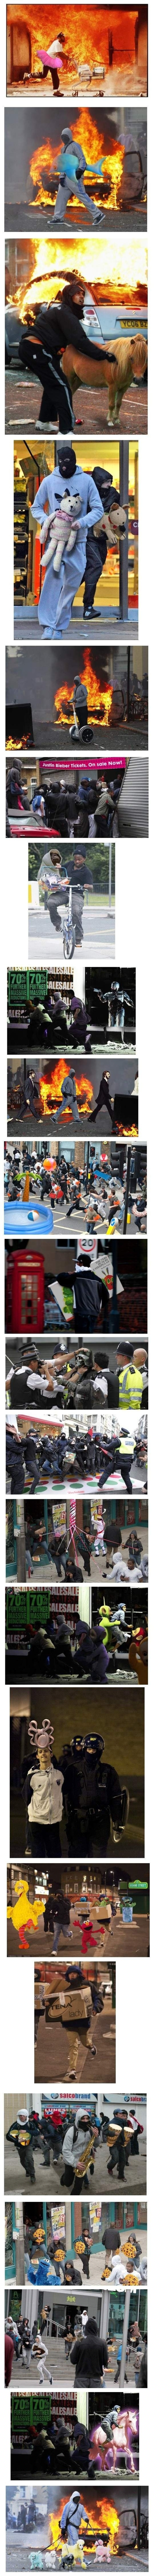 Une autre vision des émeutes de Londres.